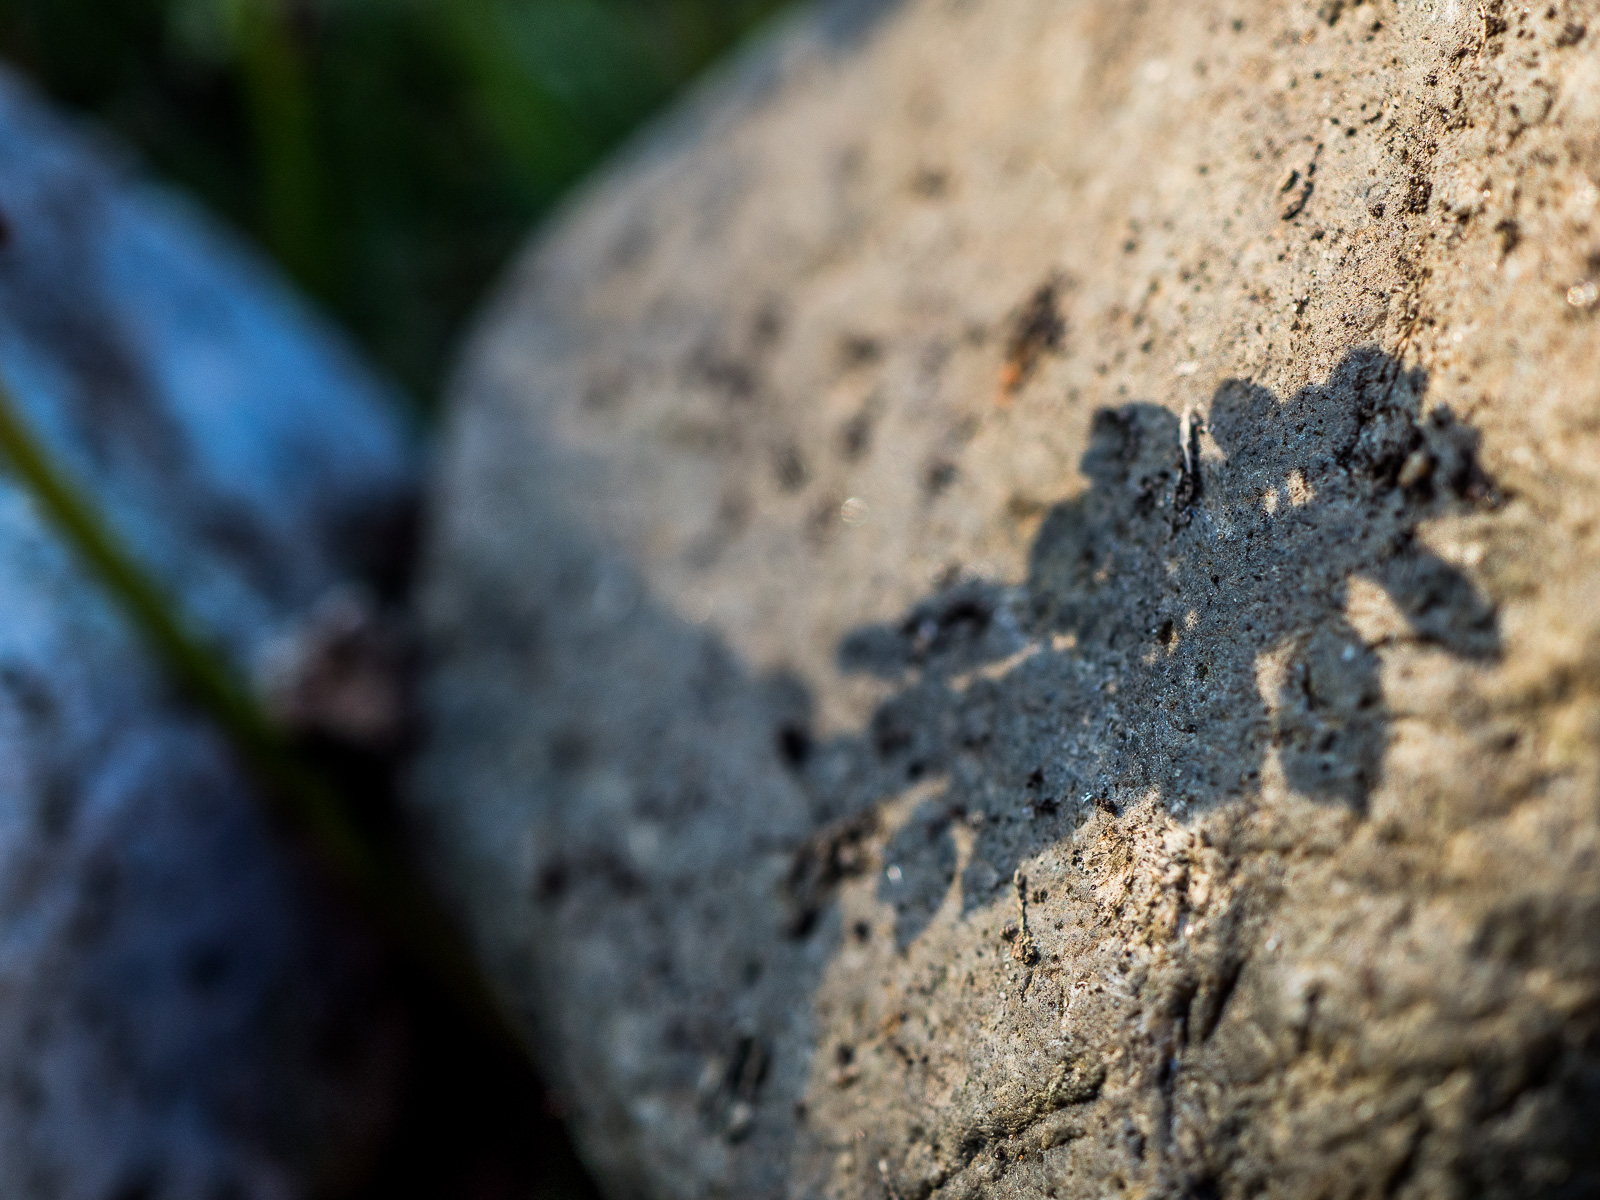 Schatten der mehrteiligen Blüte einer Perlhyazinthe fällt auf einen grauen Stein